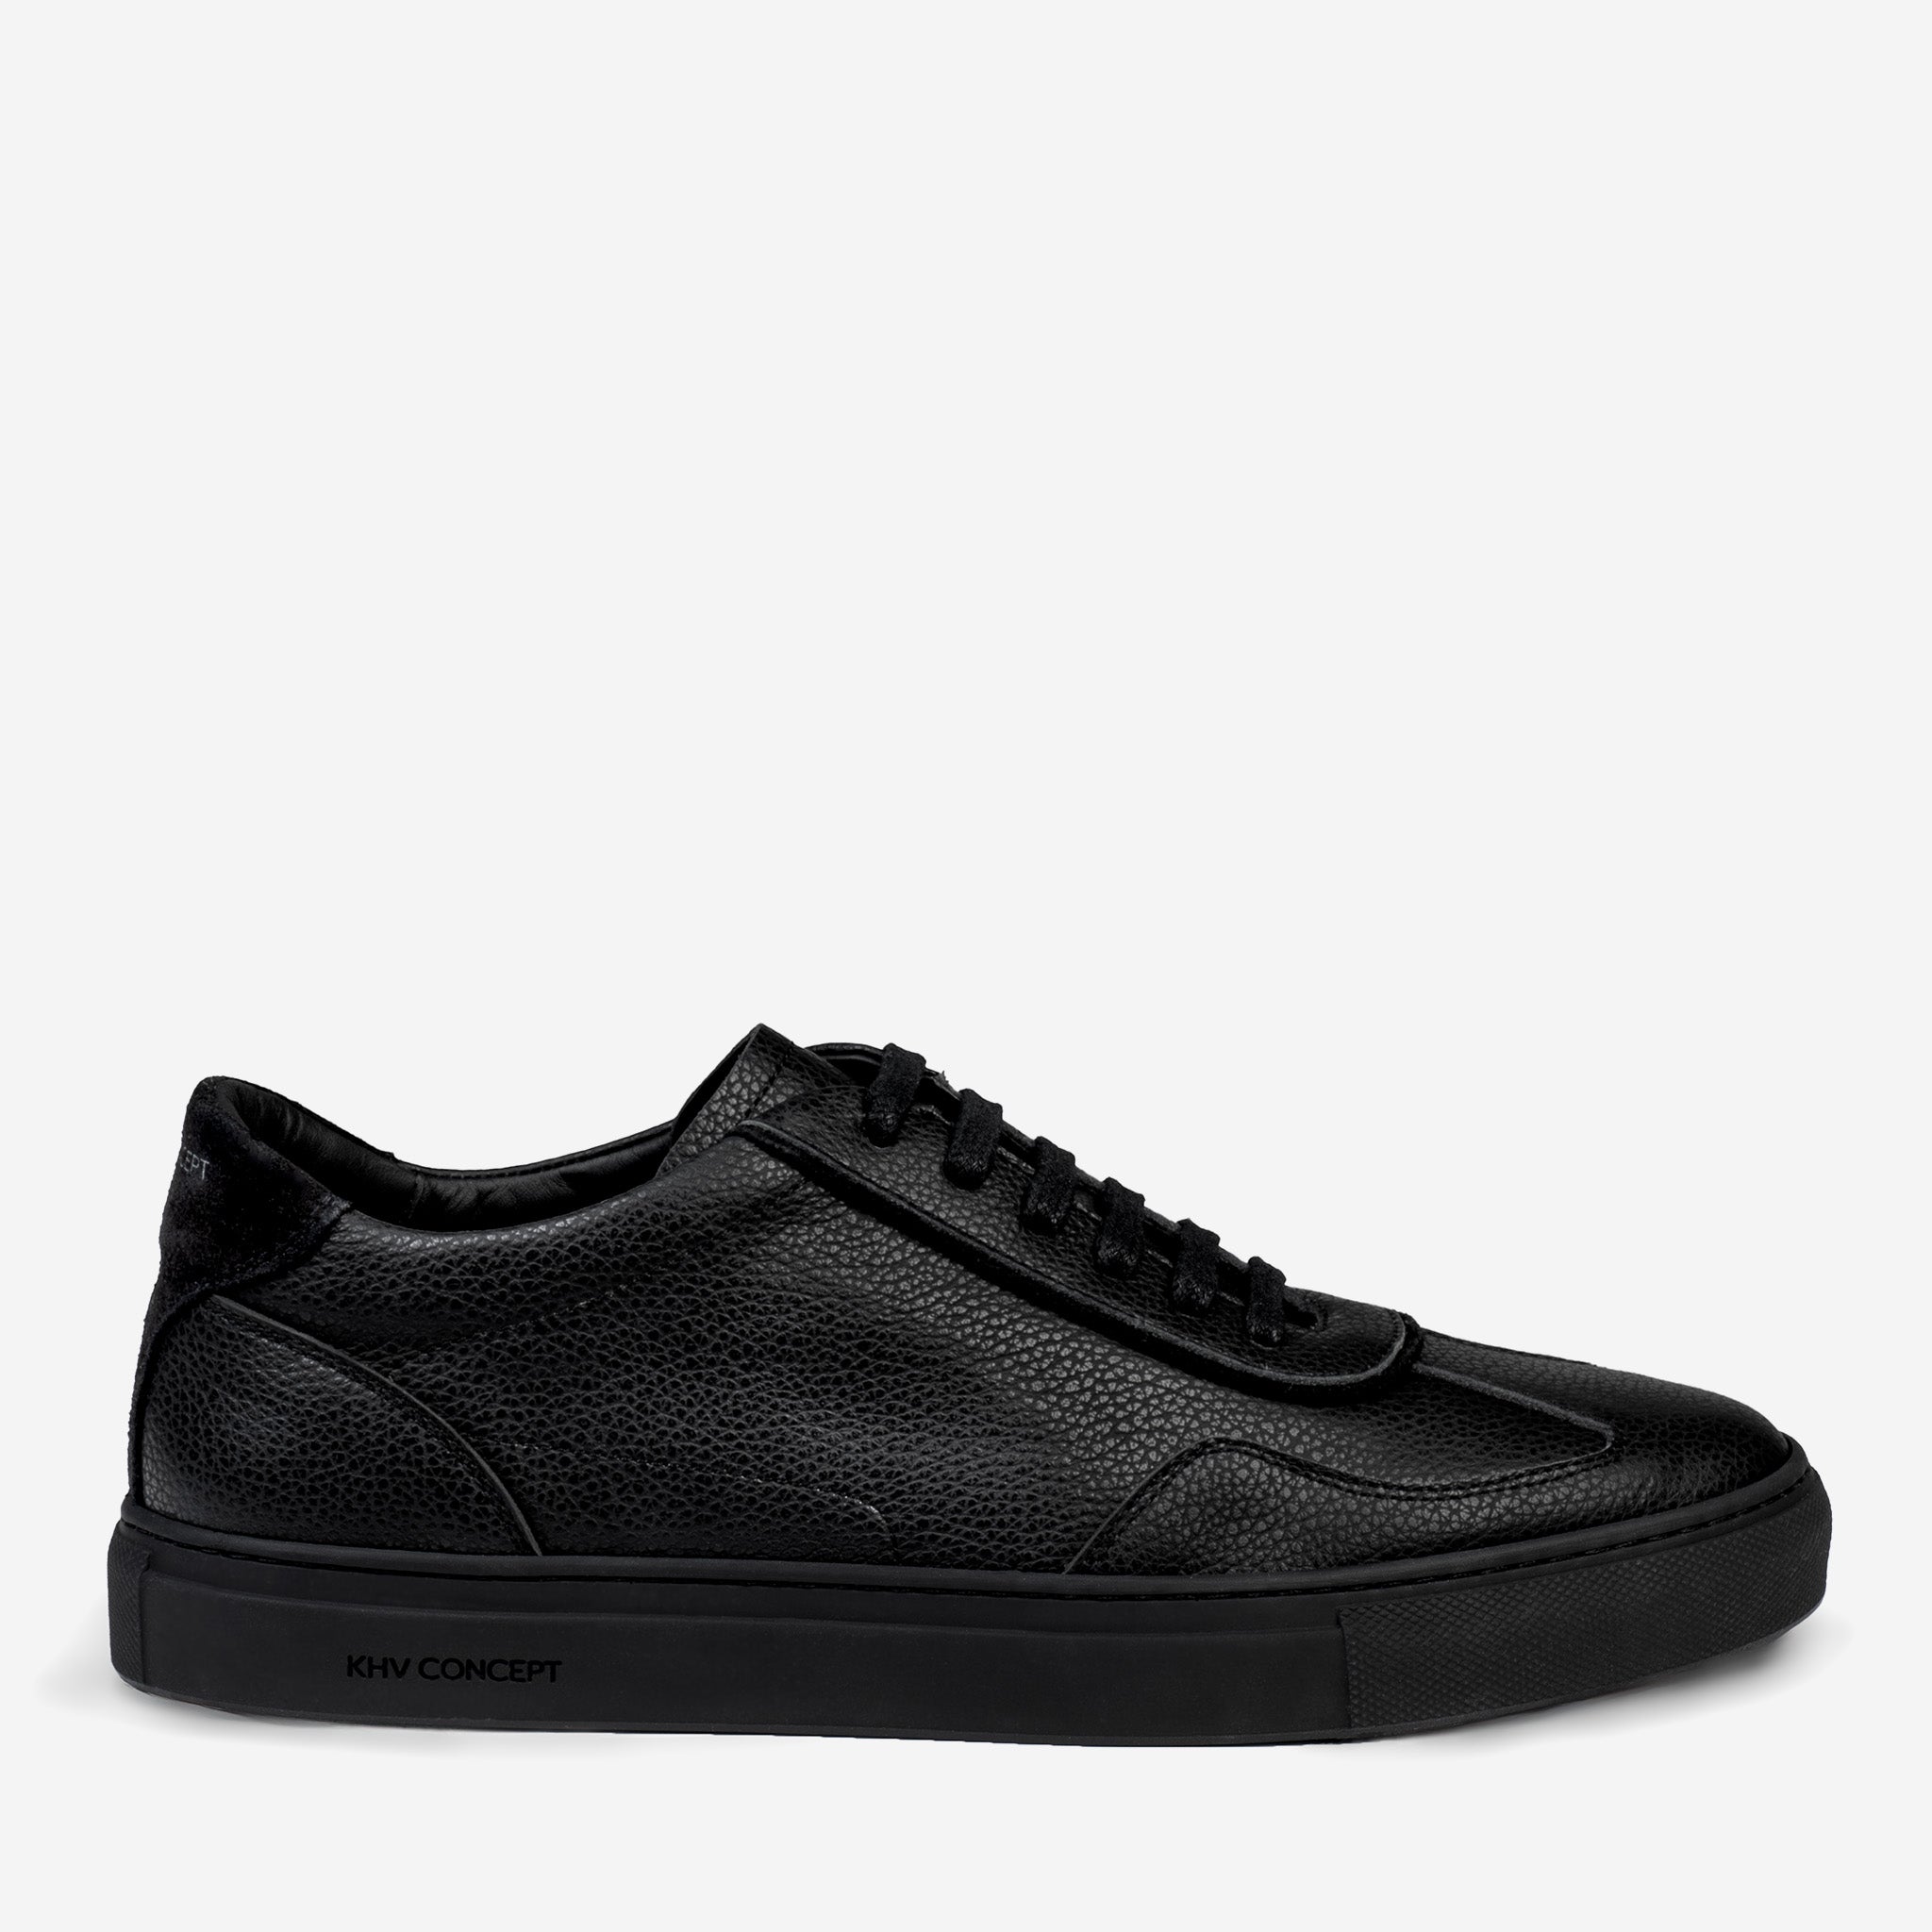 Men's Ace Sneaker Black